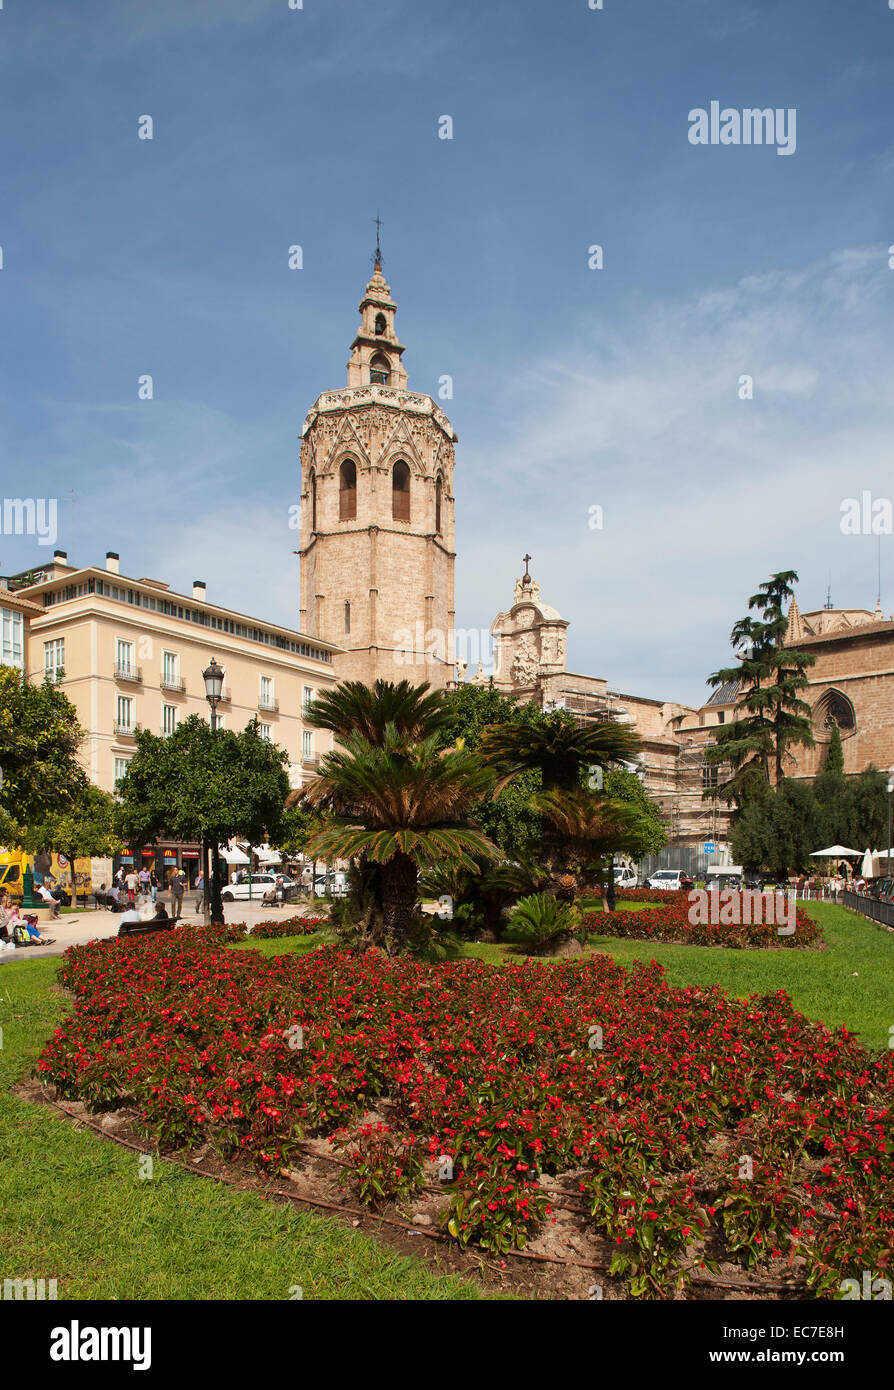 Spain, Valencia, Plaza de la Reina, bell tower Miguelete and Puerta de los Hierros Stock Photo